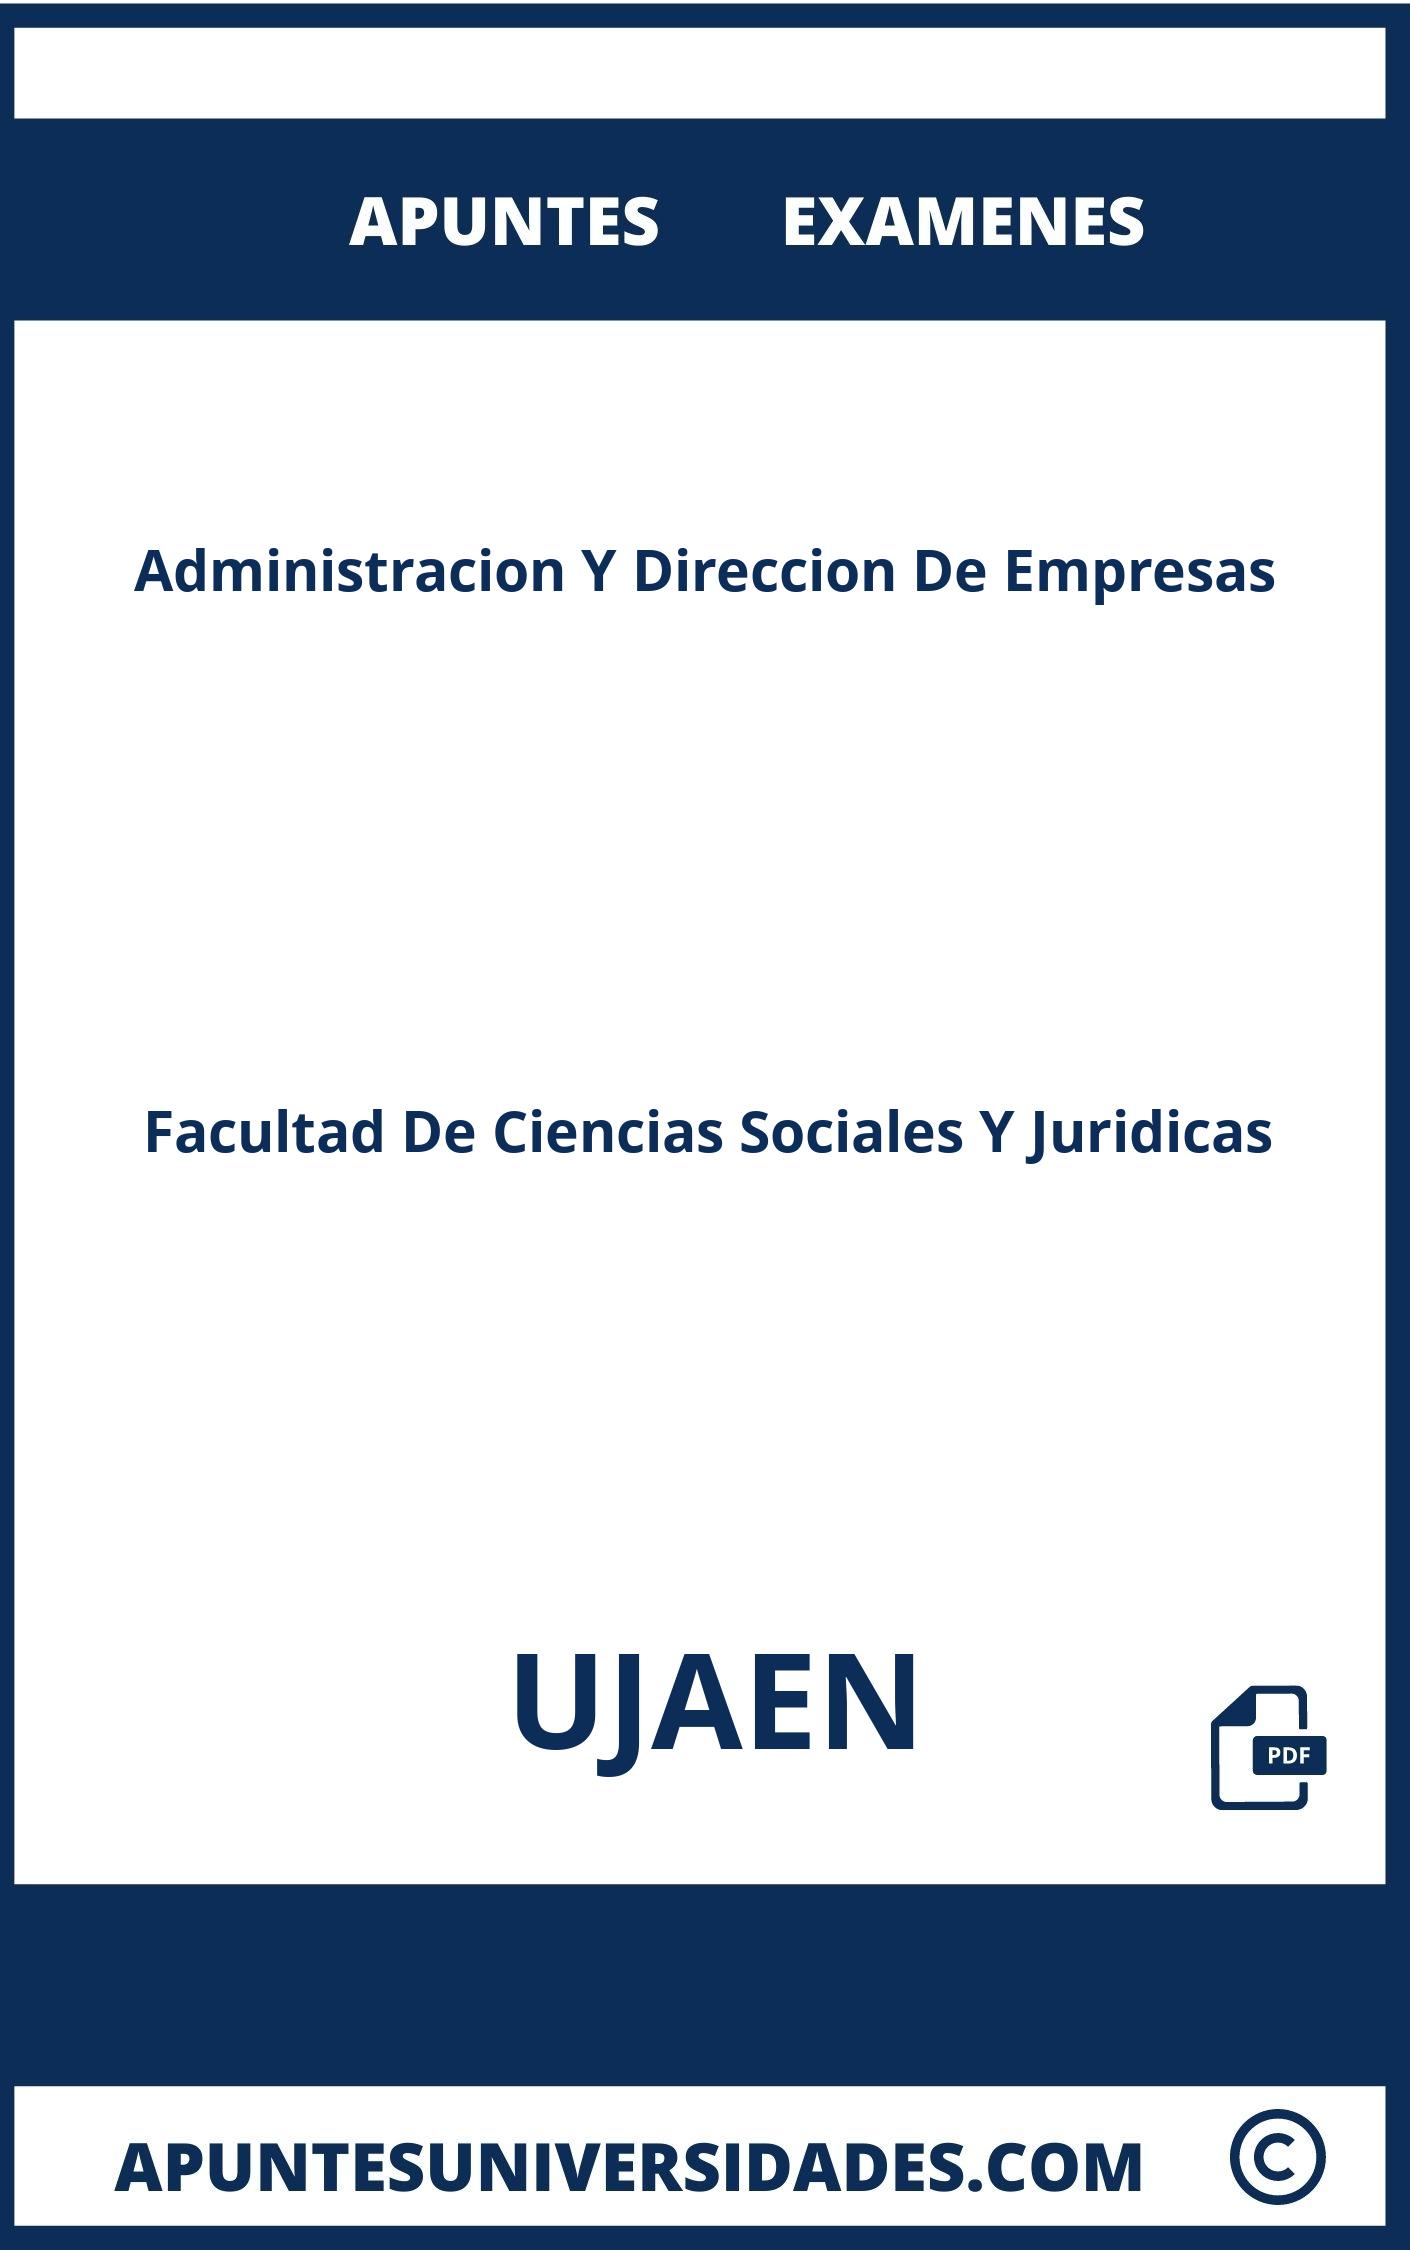 Administracion Y Direccion De Empresas UJAEN Apuntes Examenes